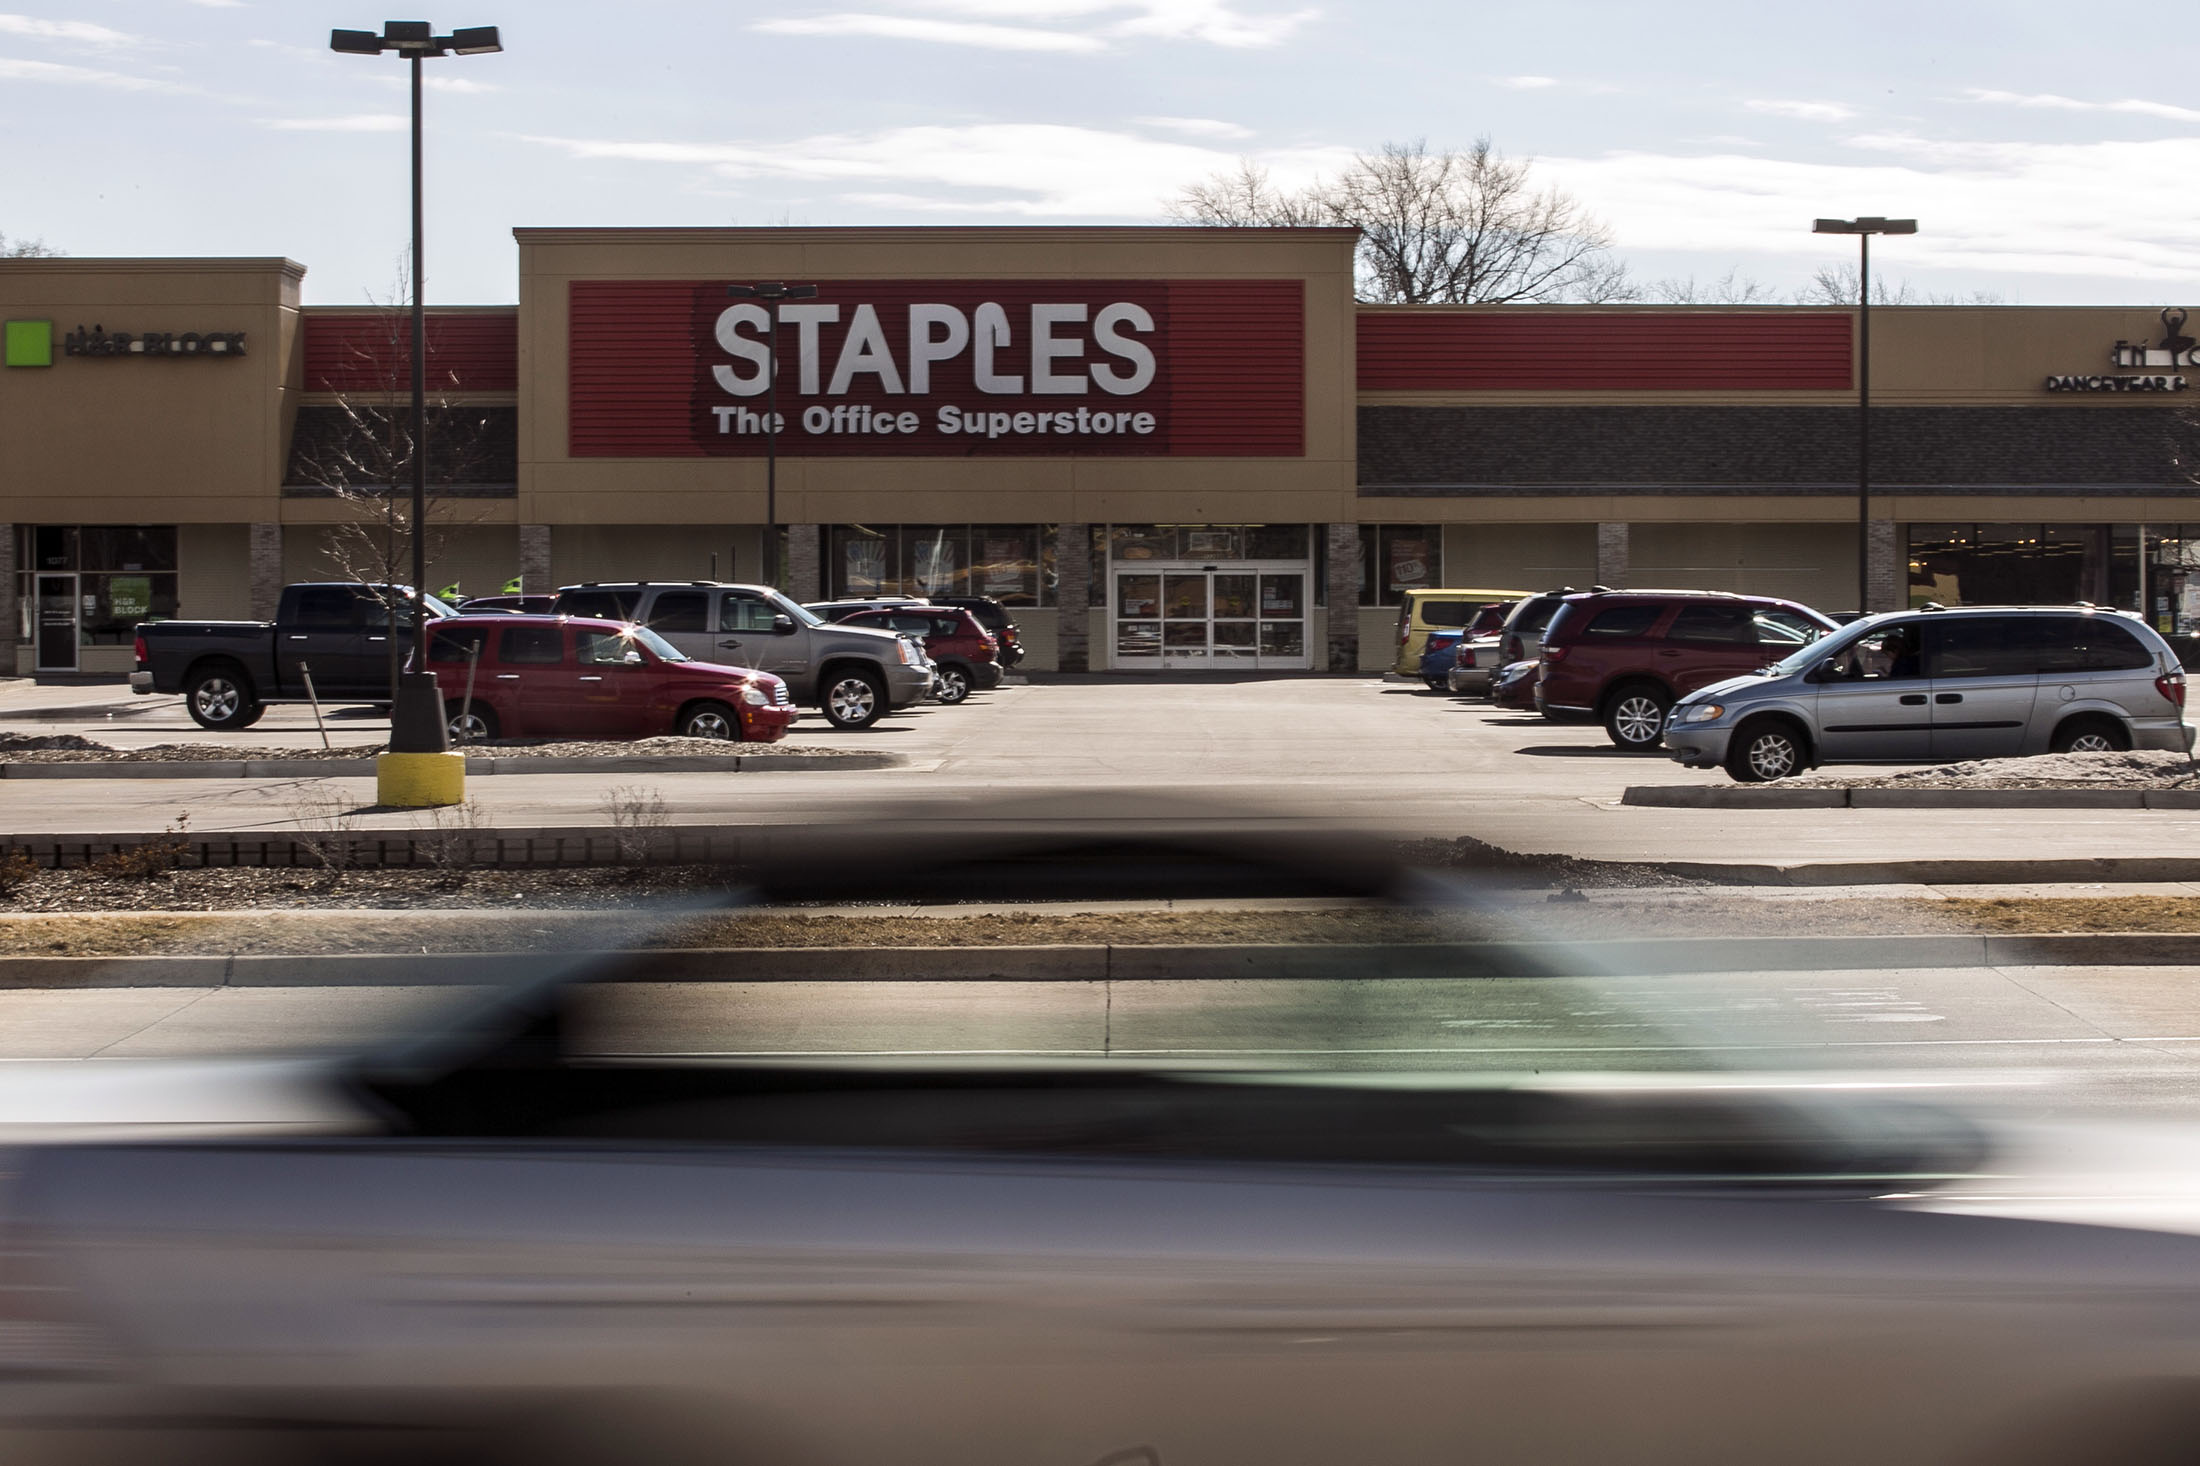 Sycamore Partners announces Staples acquisition